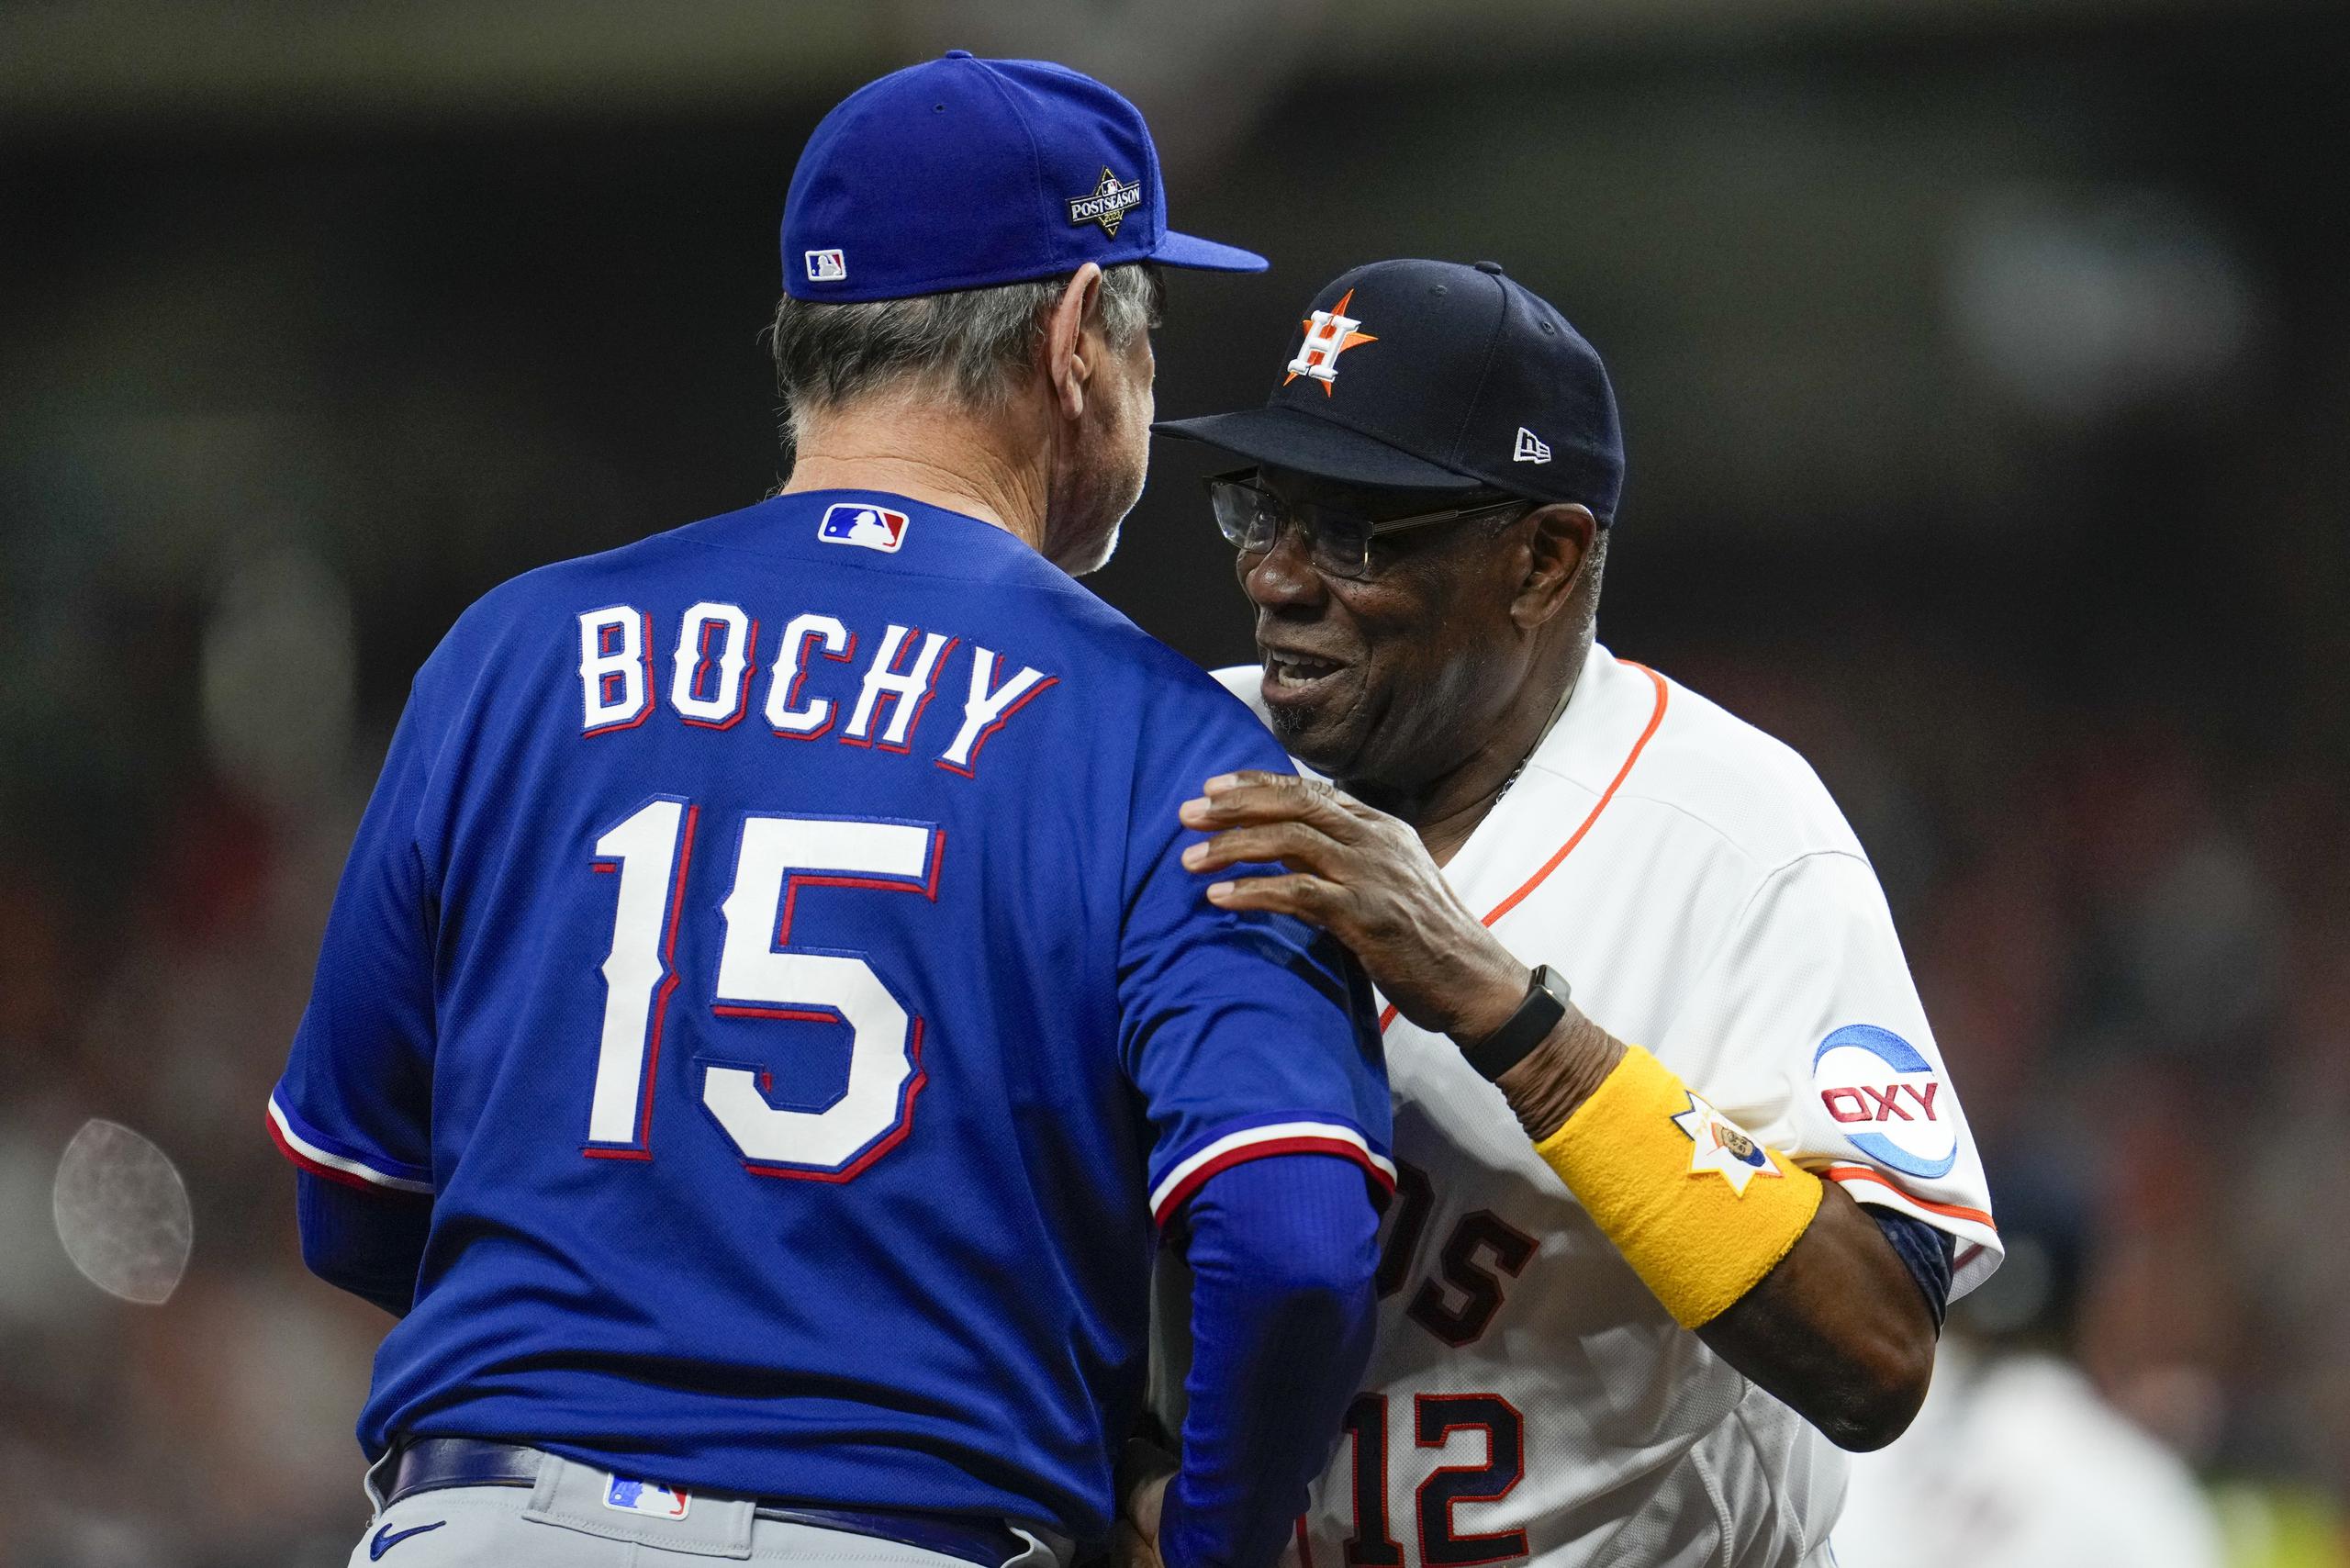 El dirigente de los Astros, Dusty Baker, de frente, abraza a su contraparte de los Rangers, Bruce Bochy. Ambos son el uno y dos entre los mánagers con más edad en MLB en la actualidad, esto con 74 y 68 años, respectivamente.